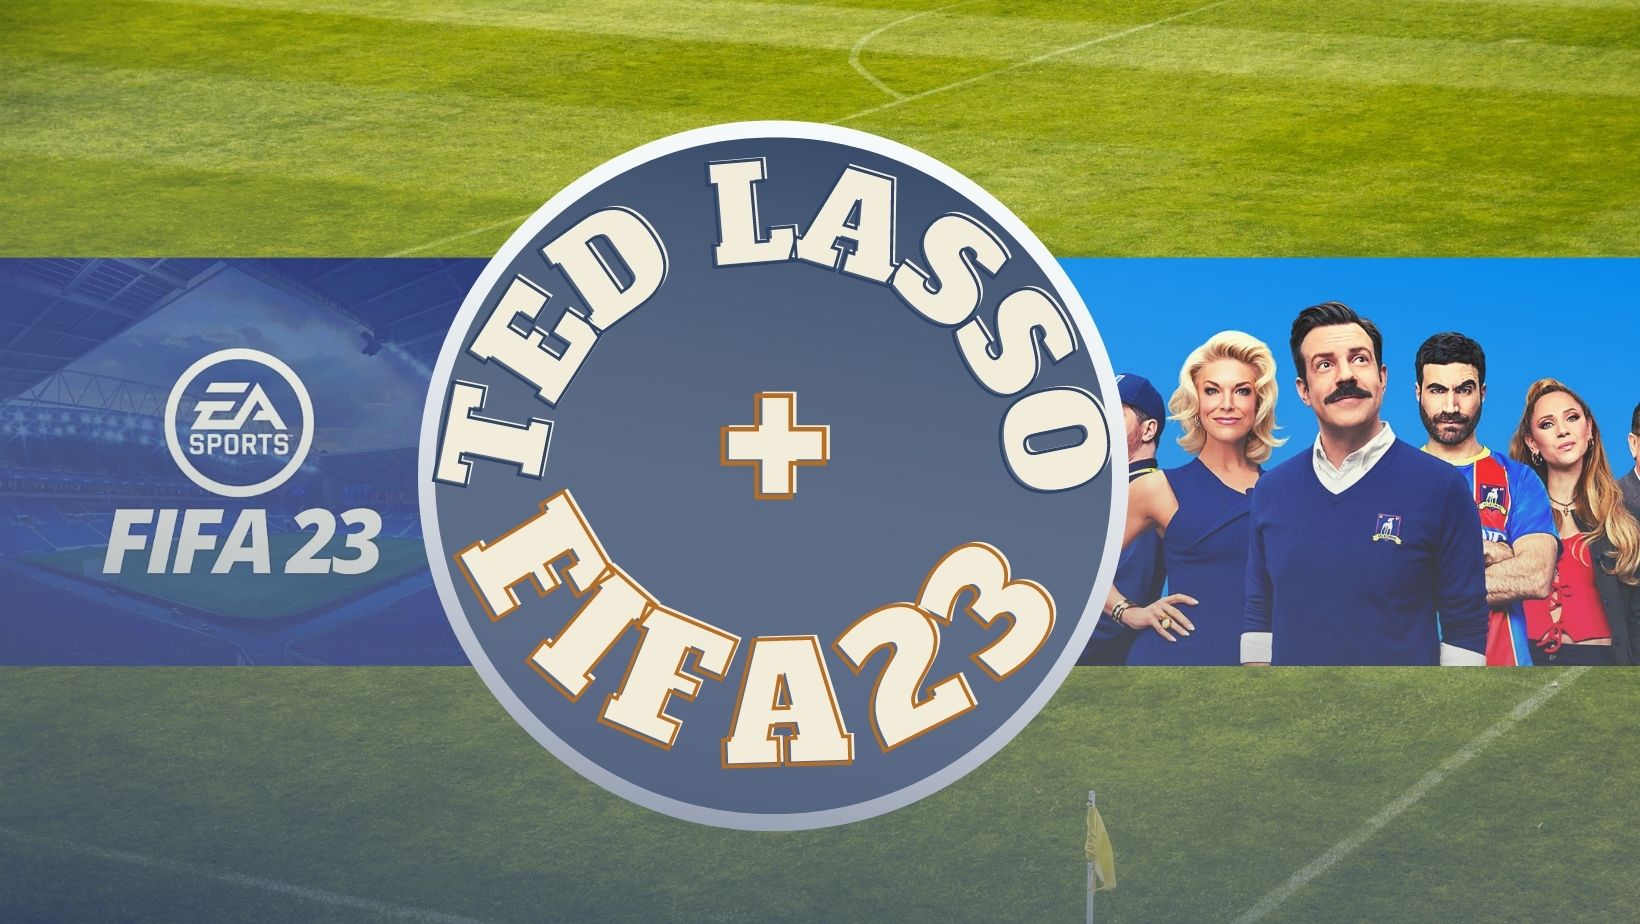 Снимка за Тед Ласо ви очаква във FIFA 23! (СНИМКИ И ТРЕЙЛЪР)